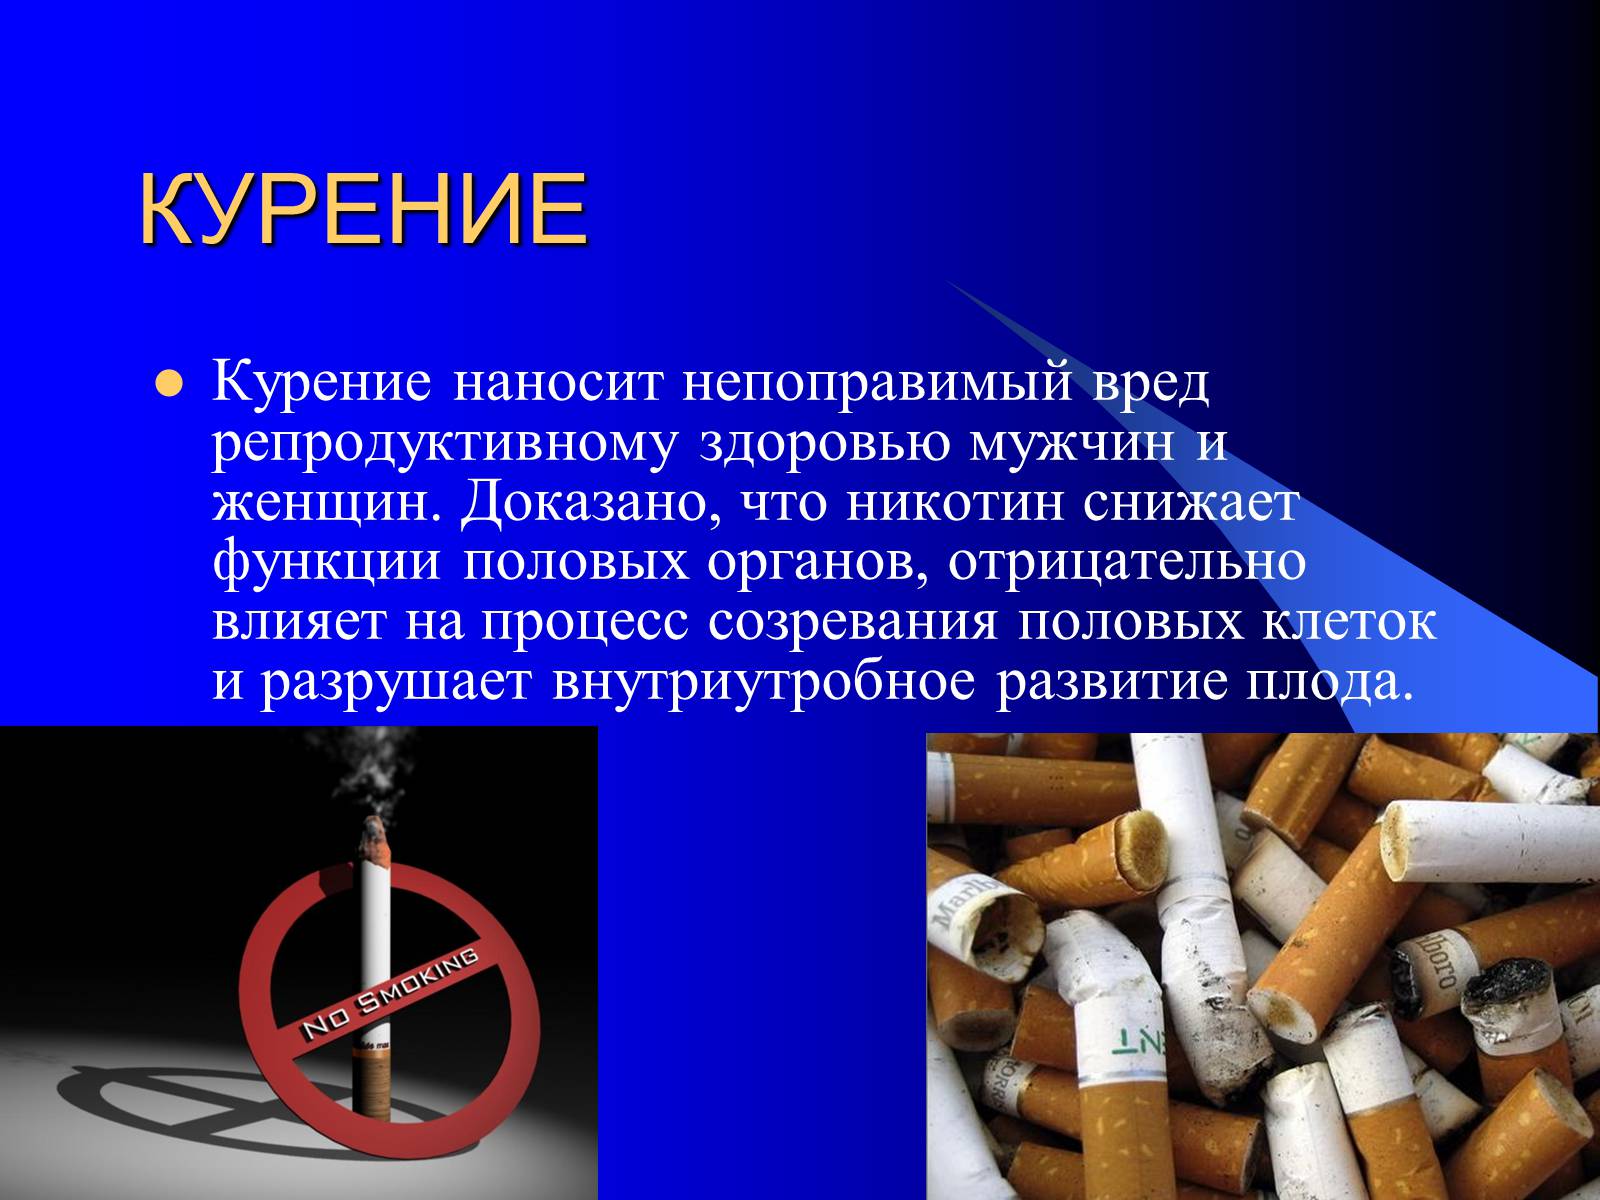 Вред наносимый организму курением. Влияние вредных привычек на организм. Влияние табакокурения на репродуктивное здоровье. Влияние курения на репродуктивную систему человека. Влияние табакокурения на репродуктивную систему.